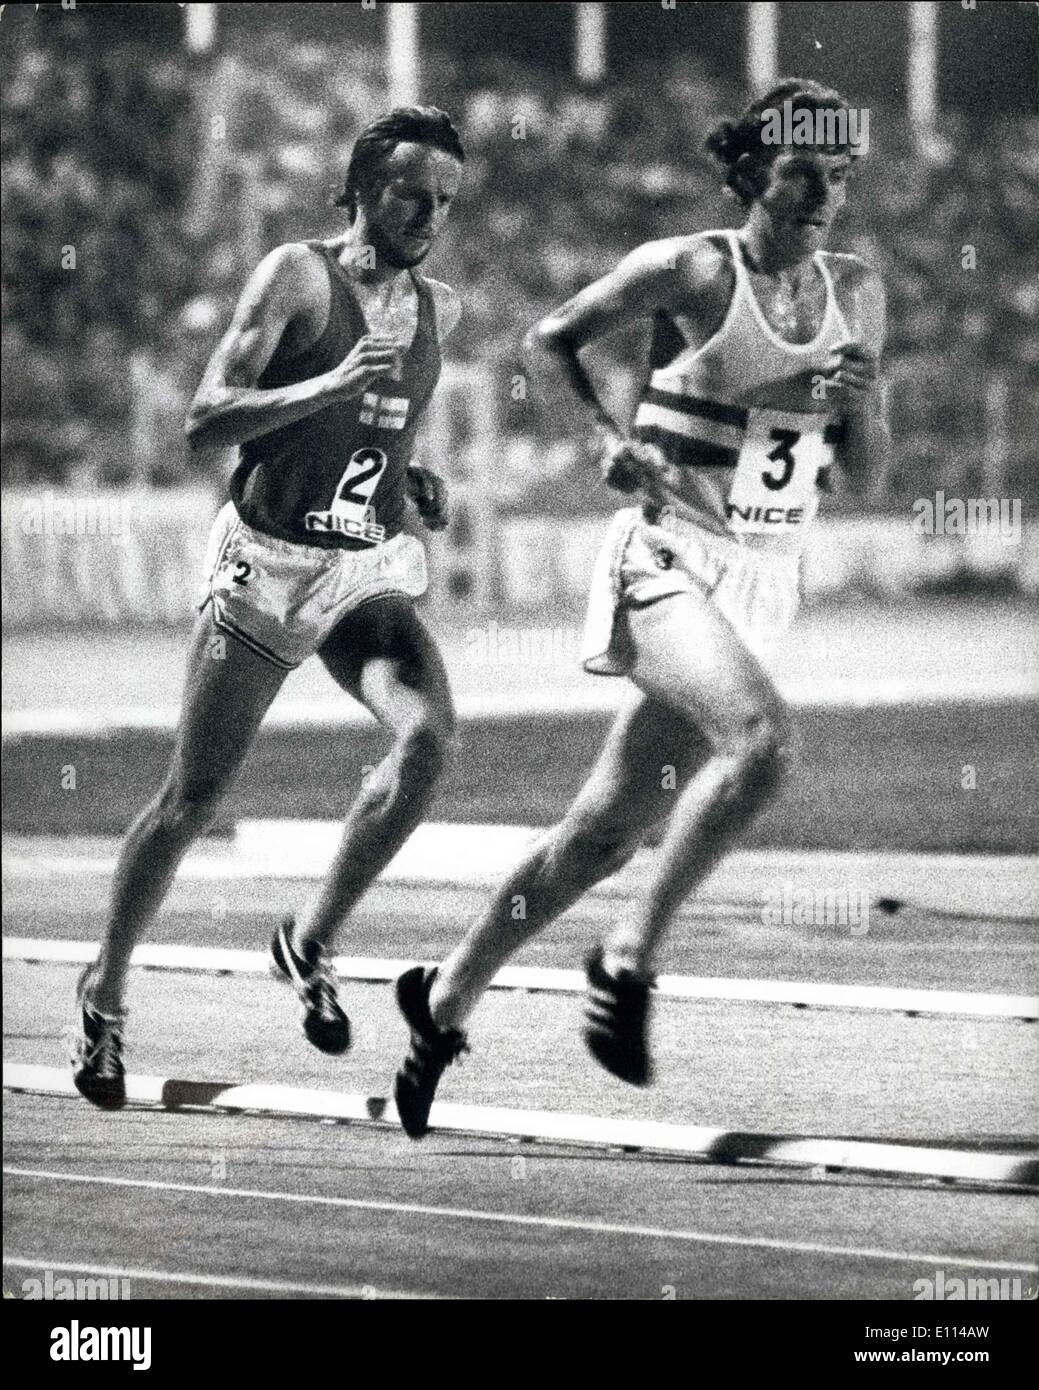 08 août 1975 - Athlétisme -- pour la finale de la coupe européenne à Nice. : photo montre la Brendan Foster mène la Lasse Viren dans les 5 000 mètres. Brendan a remporté l'événement. Banque D'Images